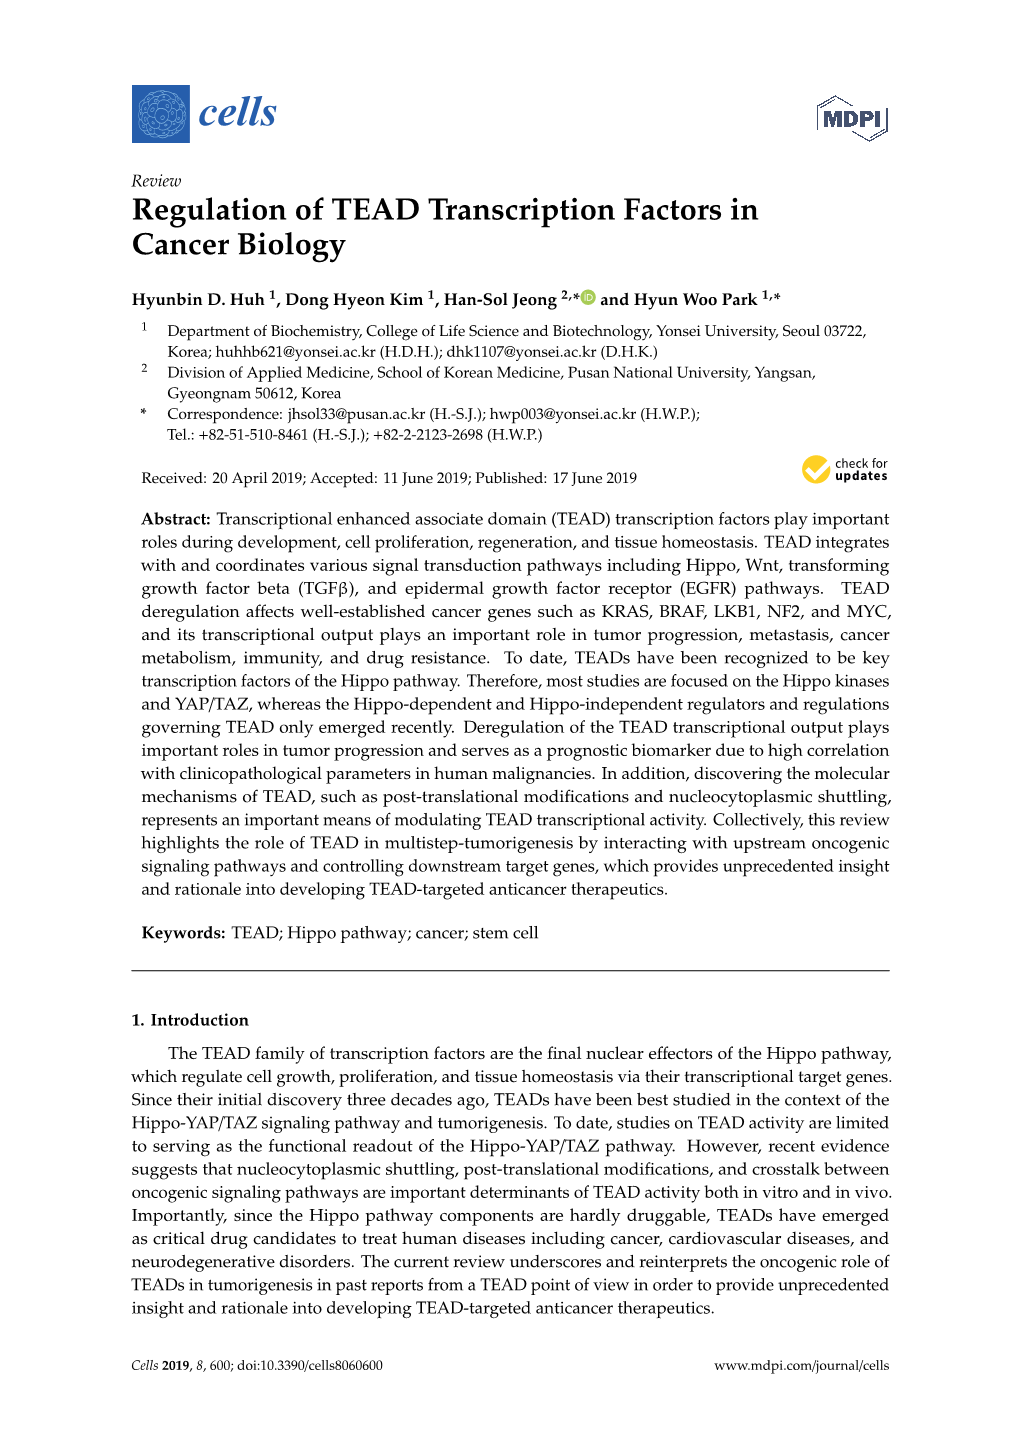 Regulation of TEAD Transcription Factors in Cancer Biology